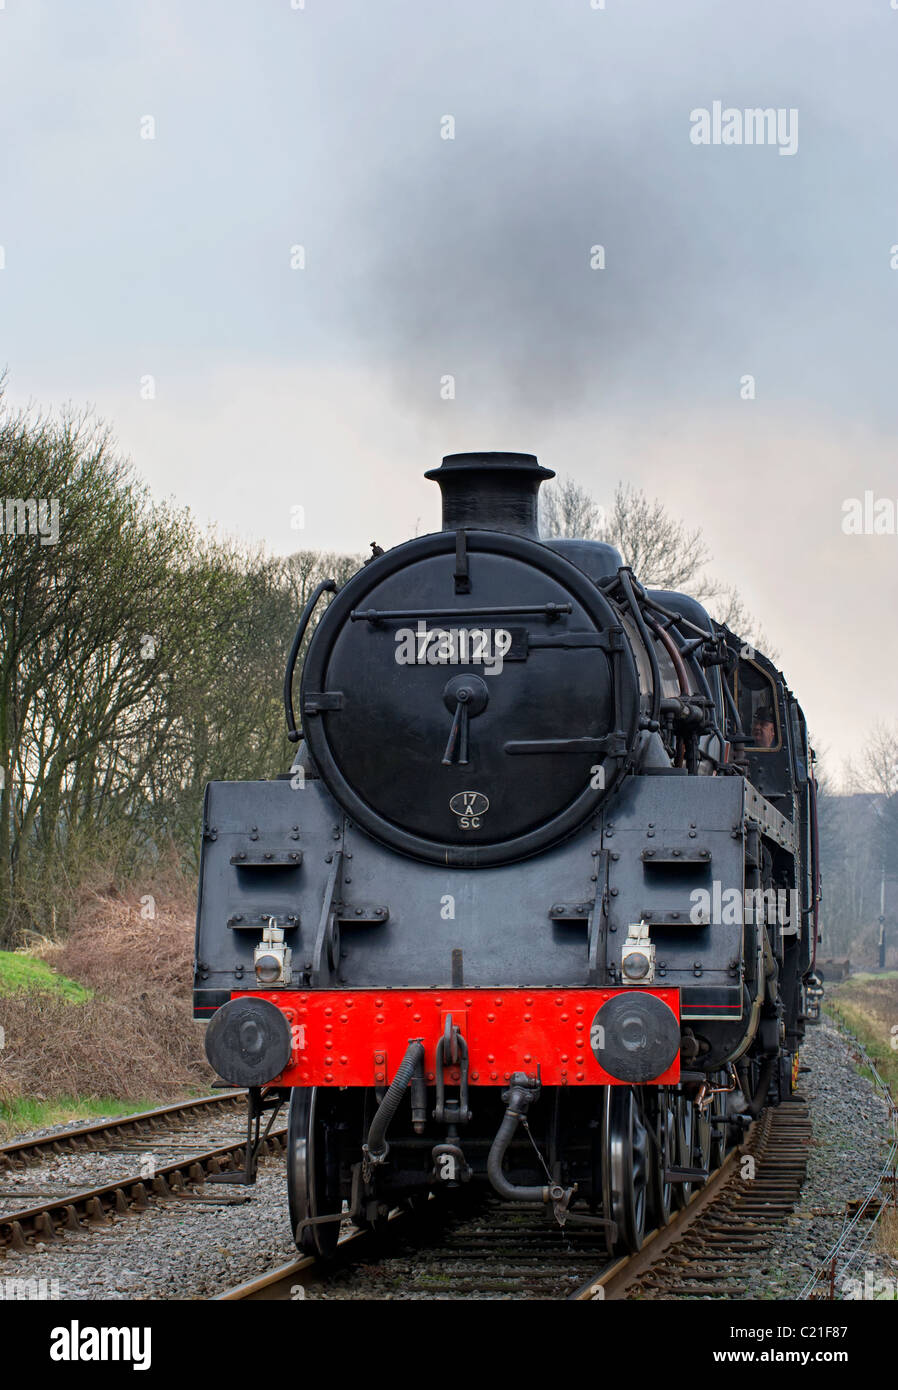 La classe standard 5 approches de la locomotive à vapeur ramsbottom station dans le Lancashire, partie de l'east lancs railway Banque D'Images